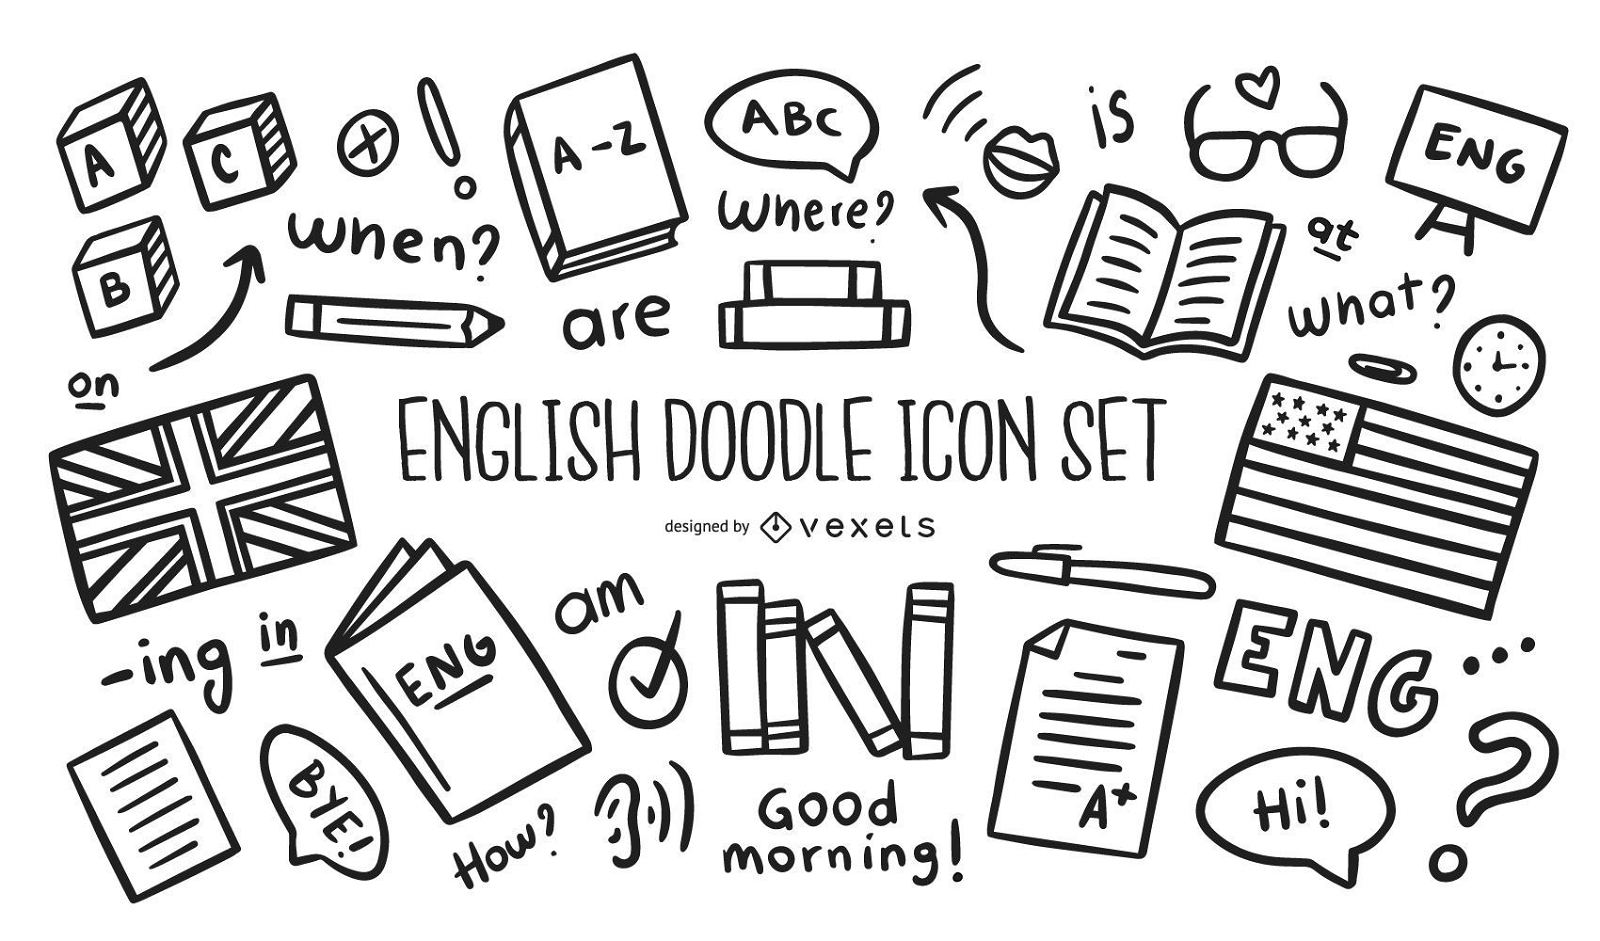 English doodle icon set